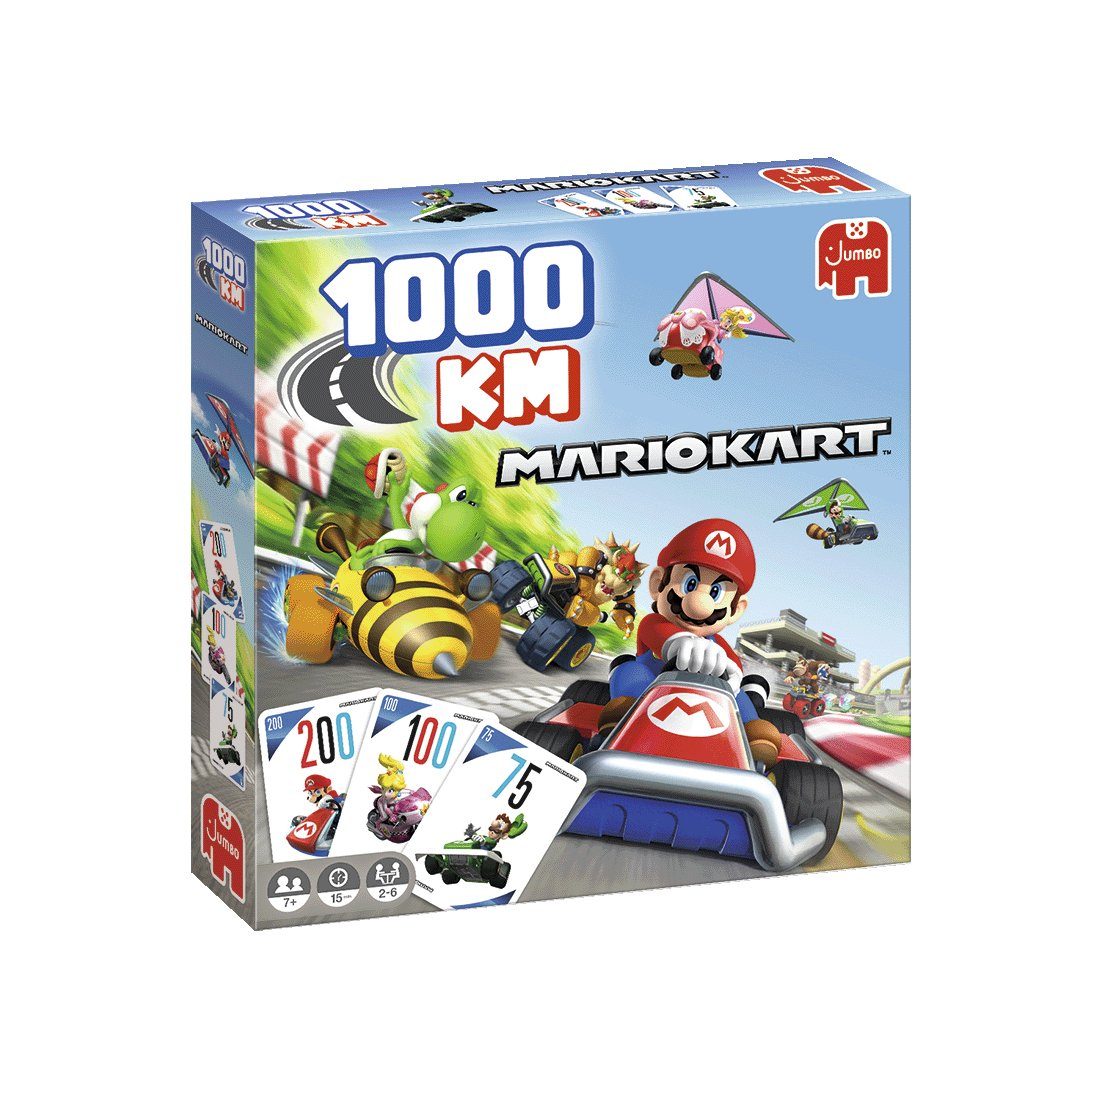 Familienspiel Kart 1000KM Spiel, Jumbo 1110100011 Spiele Mario Spiele Jumbo